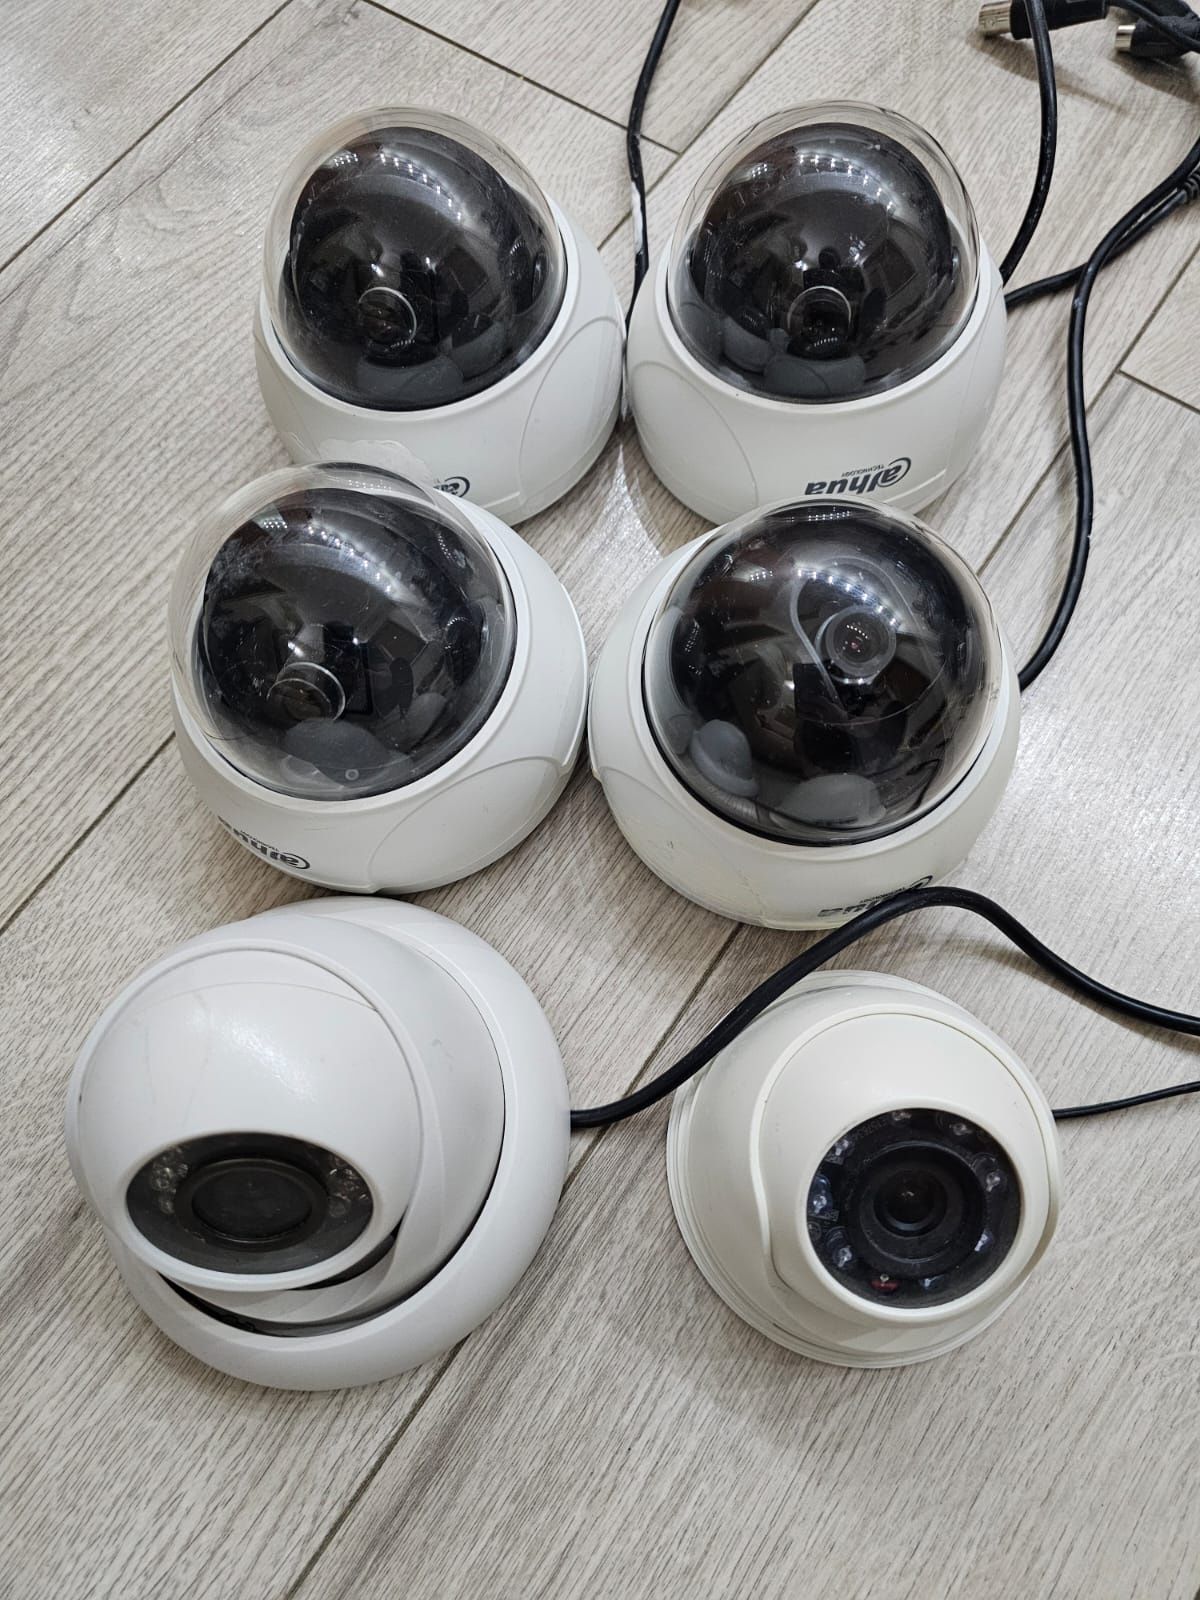 Продам камеры для видеонаблюдения